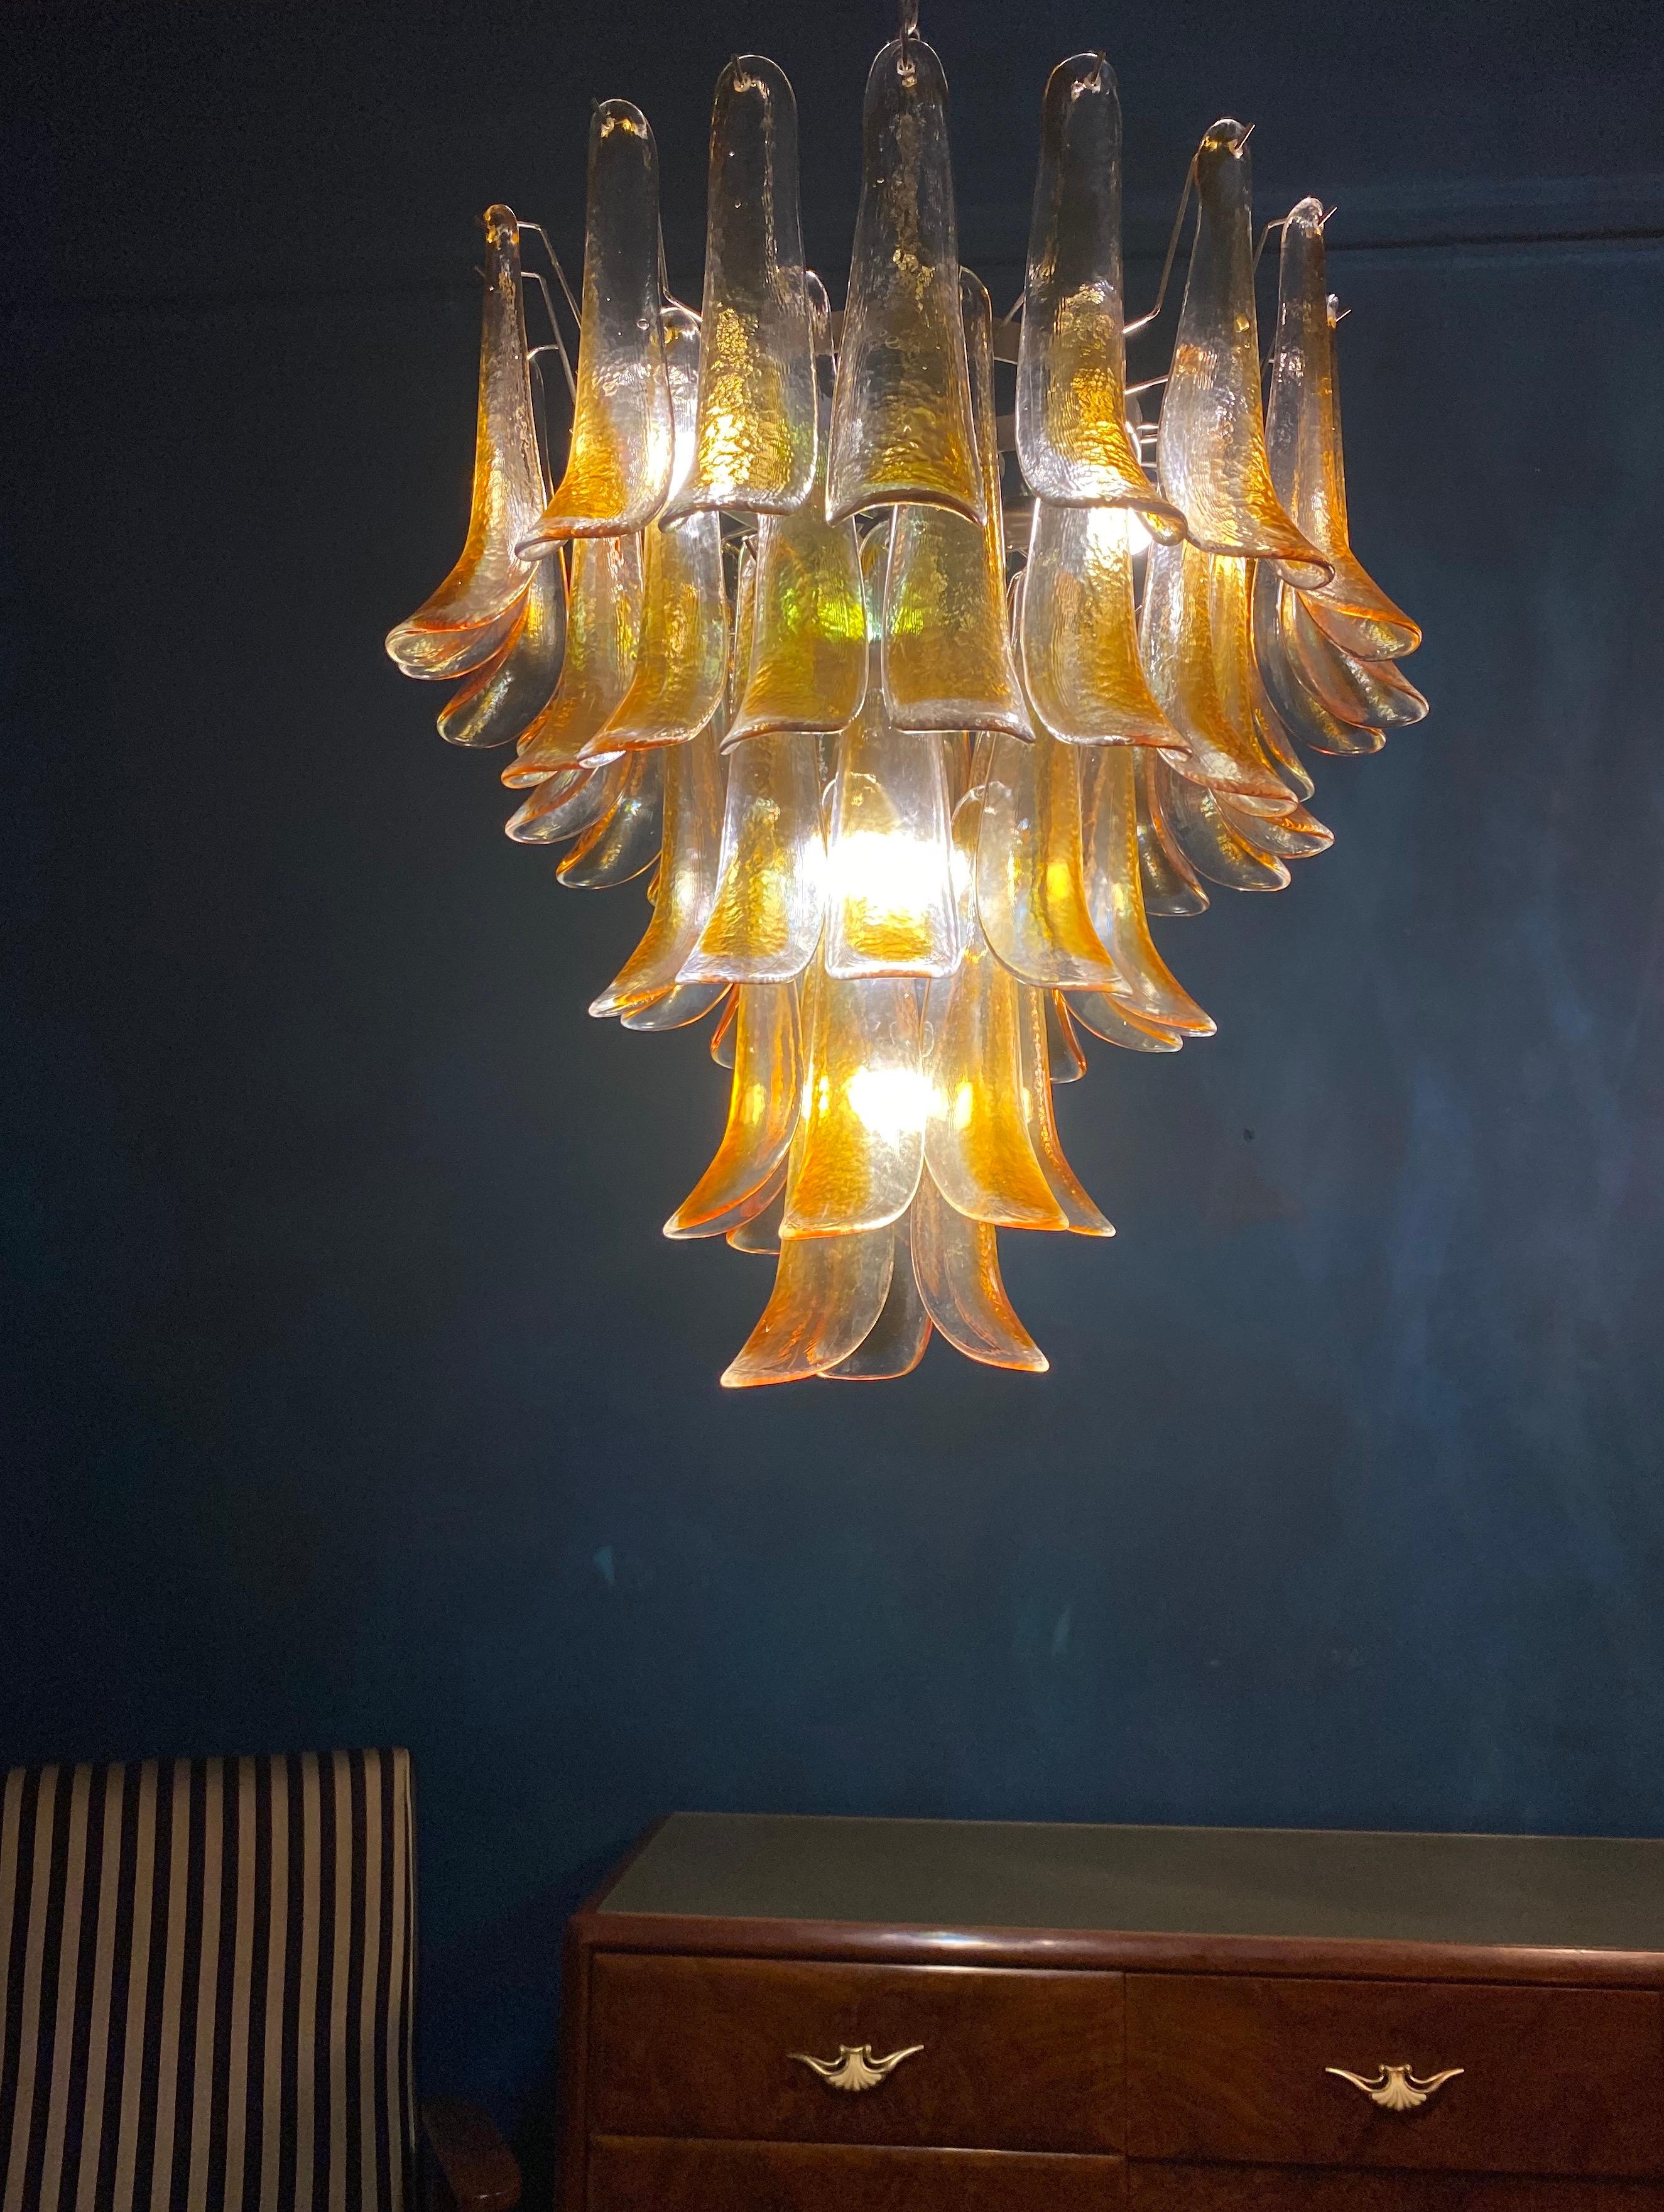 Lustre italien vintage de Murano composé de 52 pétales en verre ambré transparent soutenus par une armature chromée.
La couleur claire et ambrée des verres crée un fabuleux effet de lumière chaude.
Période : 1970s
Dimensions : 55.10 pouces (140 cm)